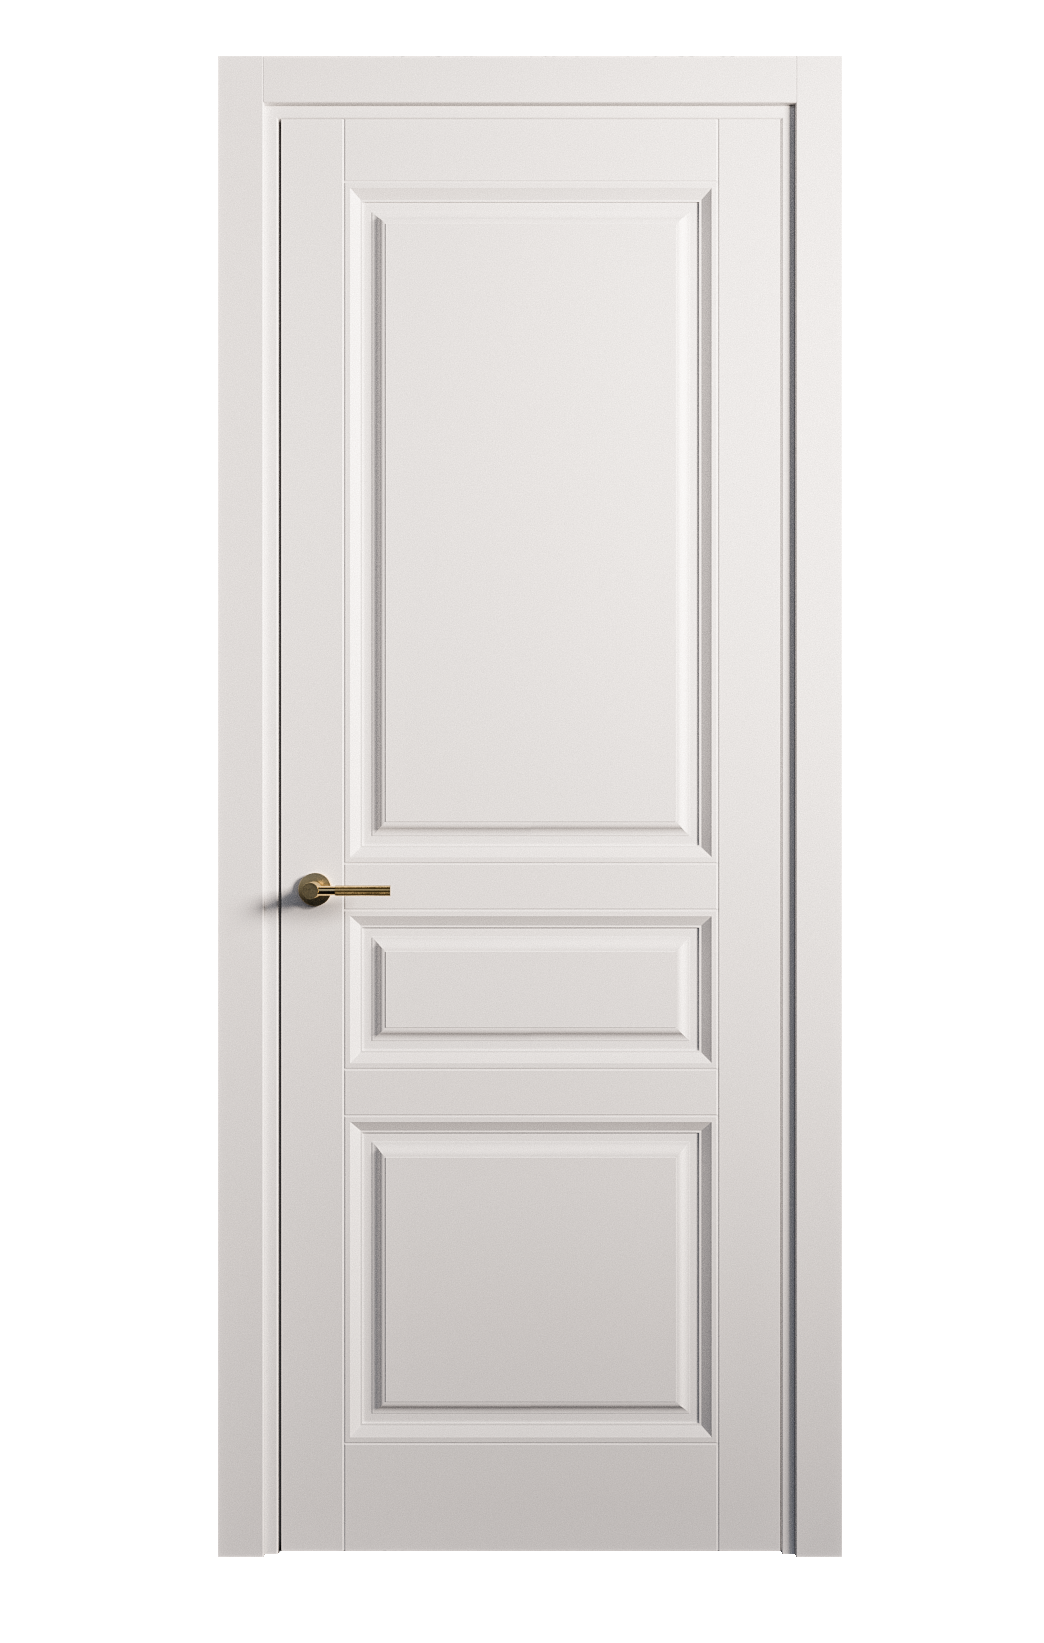 Межкомнатная дверь Venezia-2 глухая эмаль ral 9003 25799